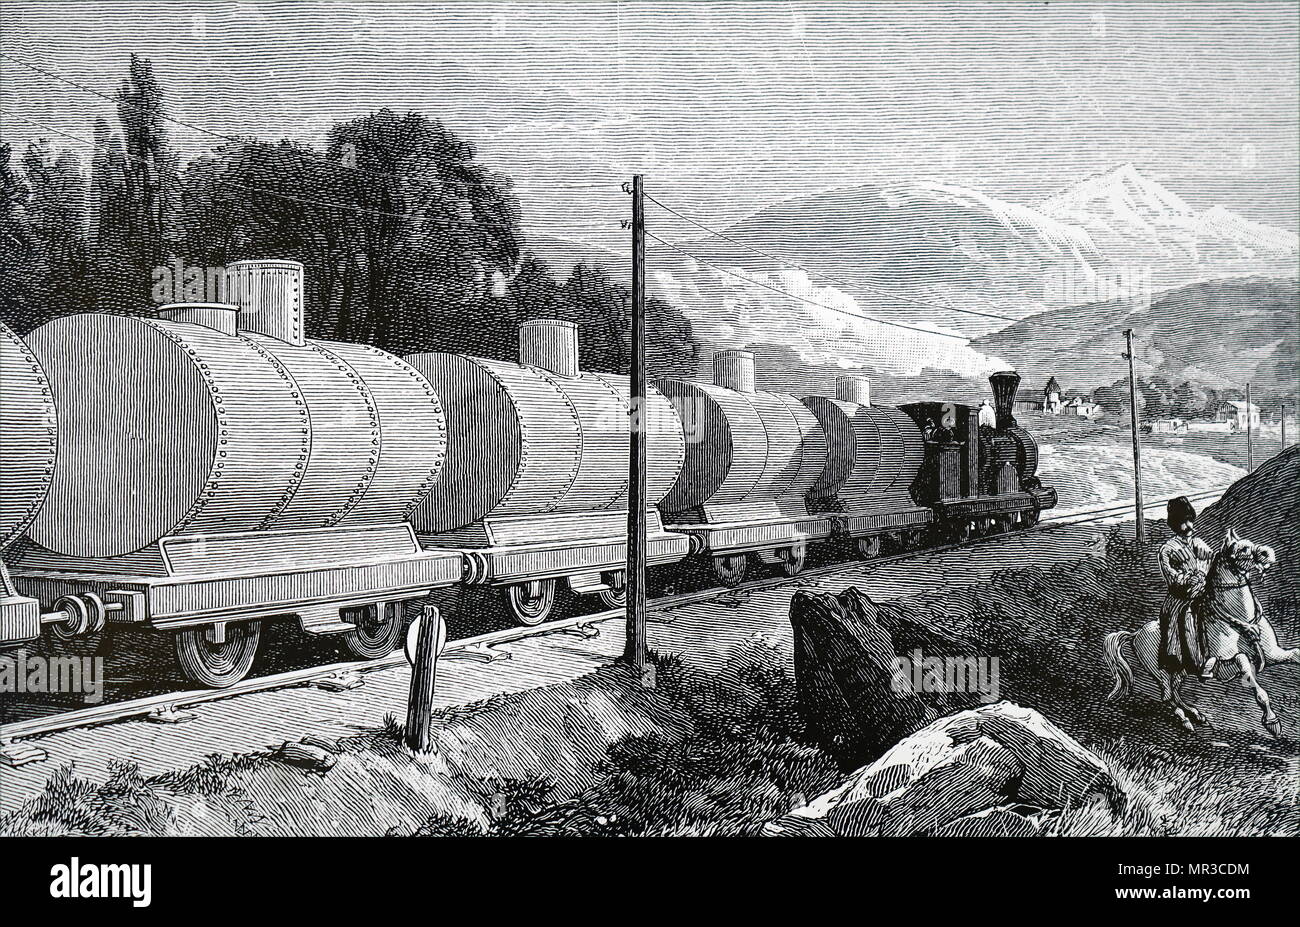 Abbildung: Darstellung einer Öl zug Öl aus der Branobel ölquellen Für den Vertrieb in Russland. Vom 19. Jahrhundert Stockfoto